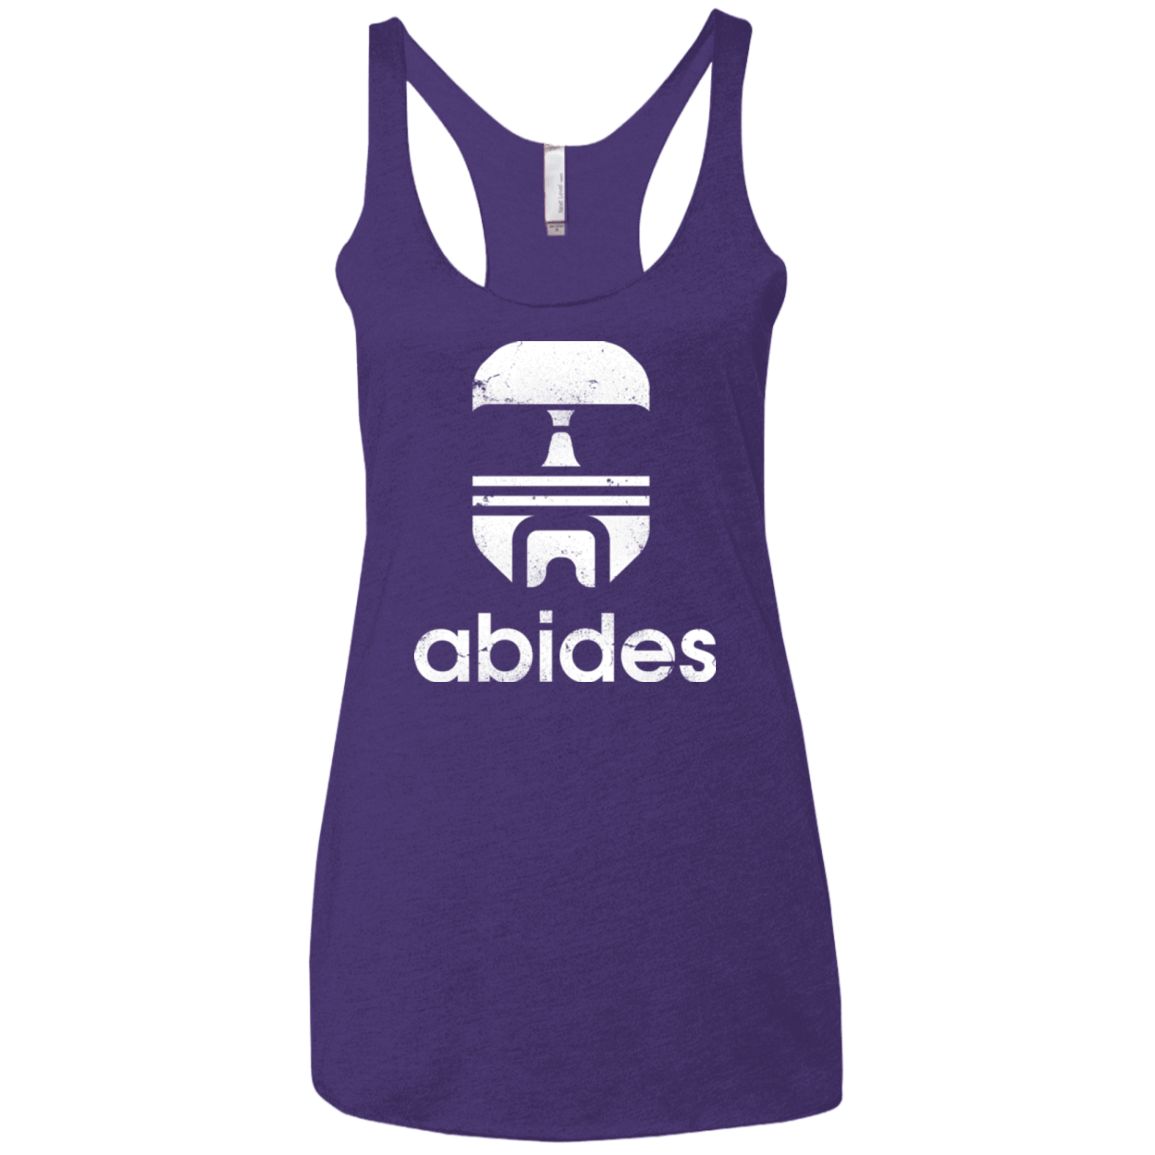 T-Shirts Purple / X-Small Abides Women's Triblend Racerback Tank